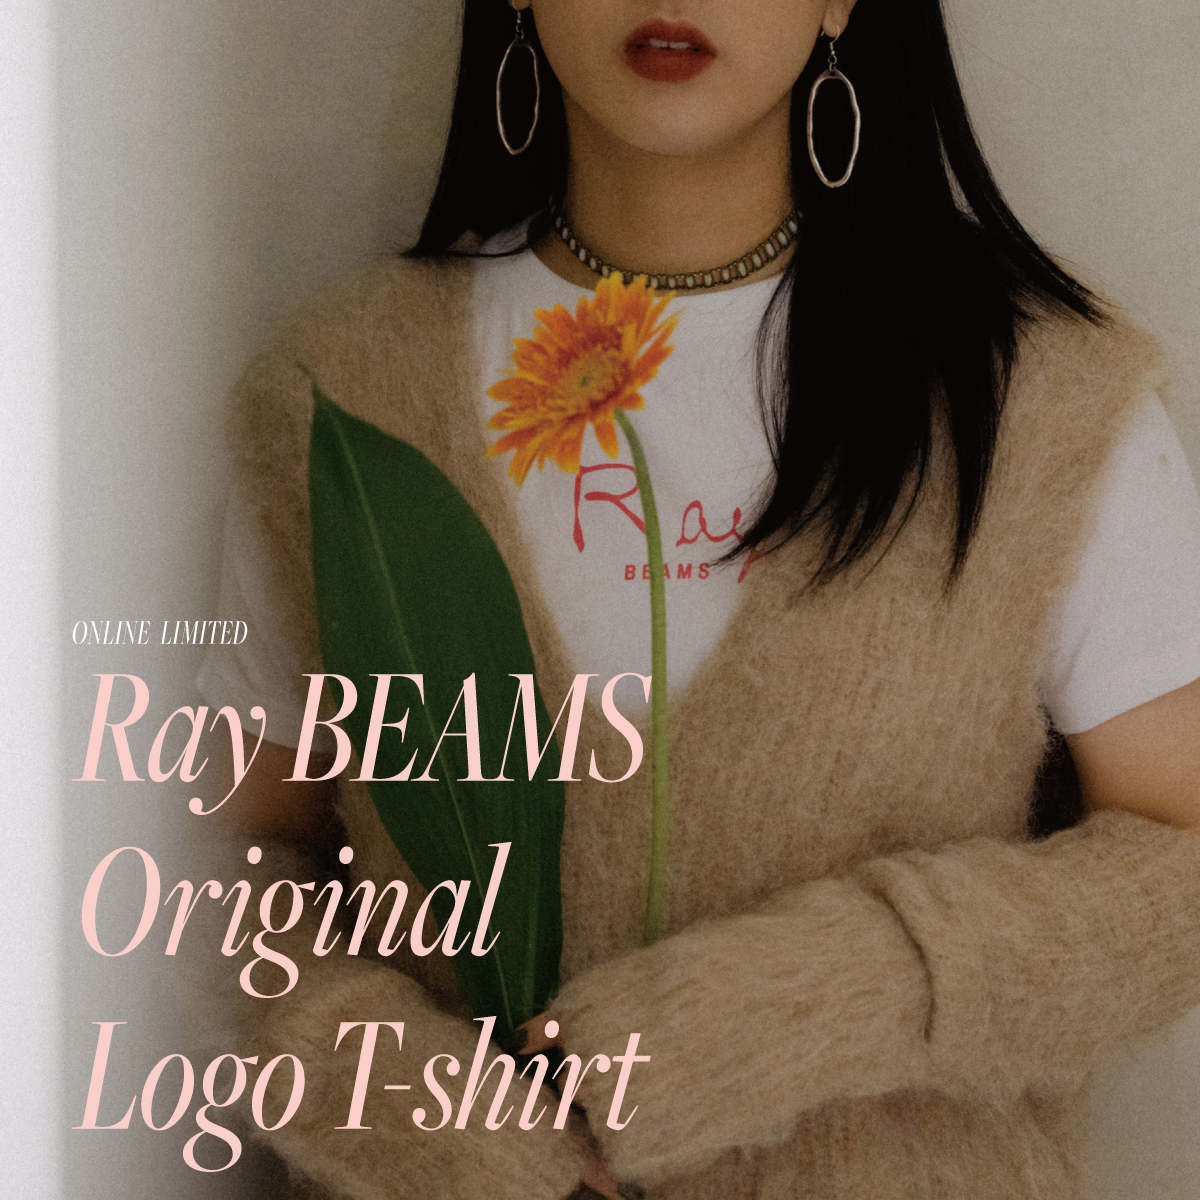 獻給熱愛時髦的女性，〈Ray BEAMS〉LOGO T-SHIRT於官方網站限定販售